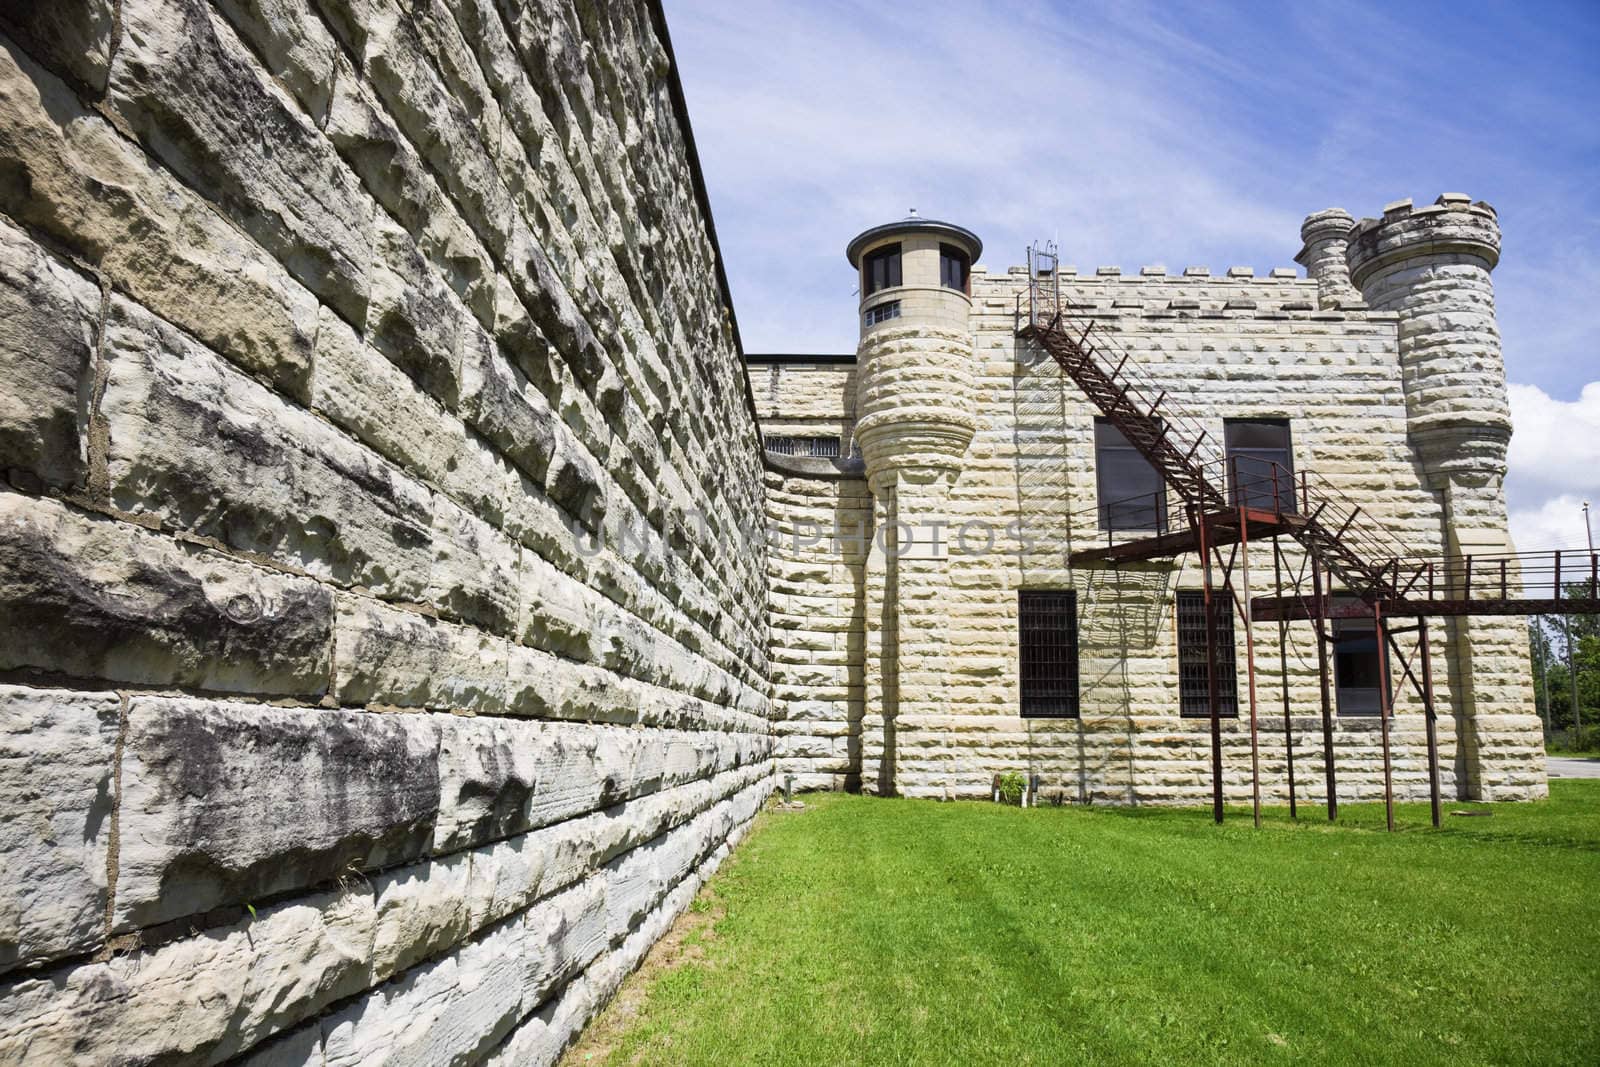 Walls of historic Jail in Joliet by benkrut